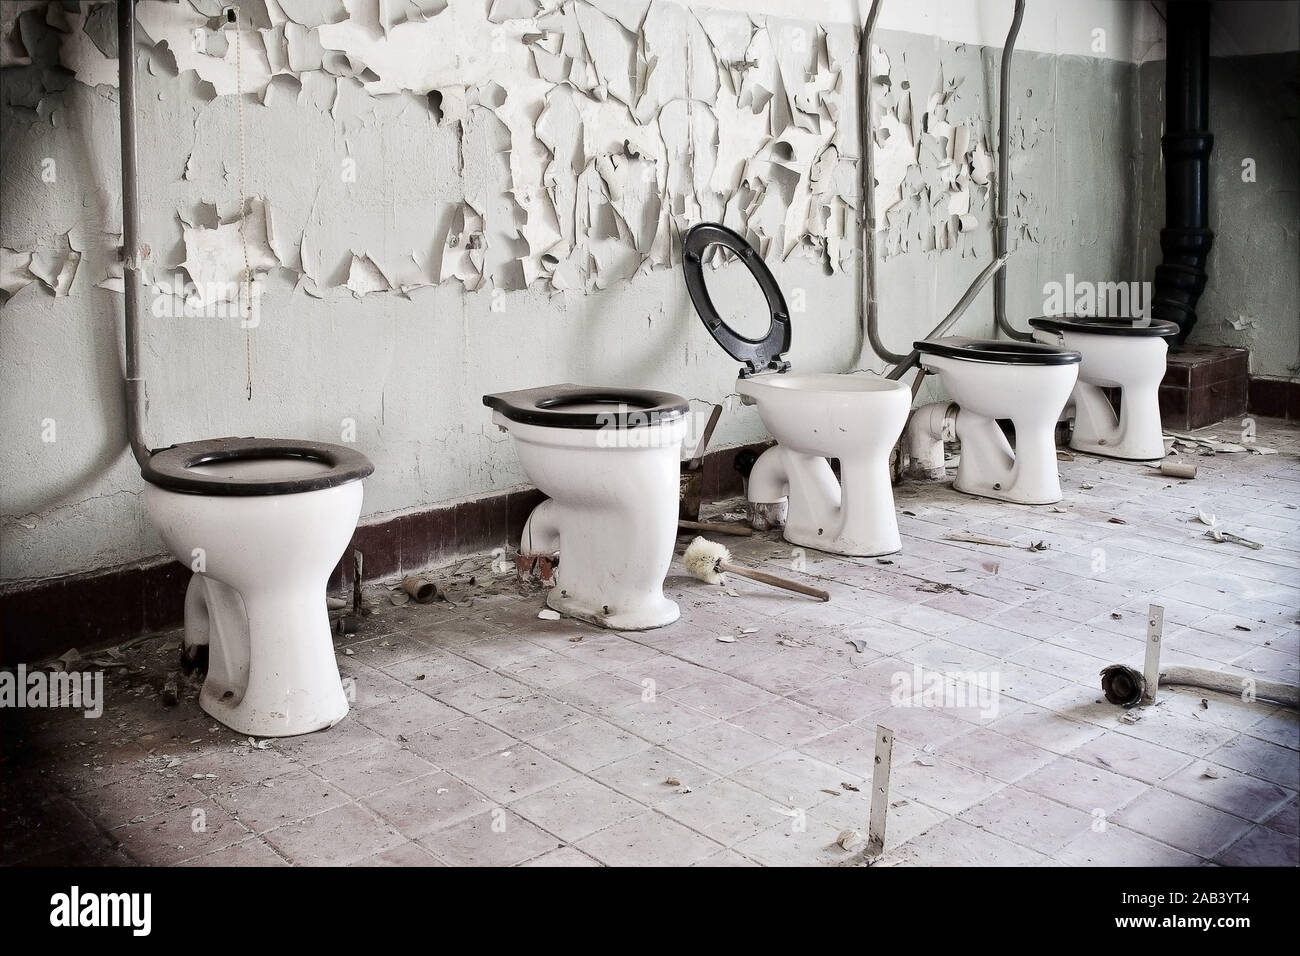 Alte Toilettenbecken in einer Reihe |Old toilet bowl in a row| Stock Photo